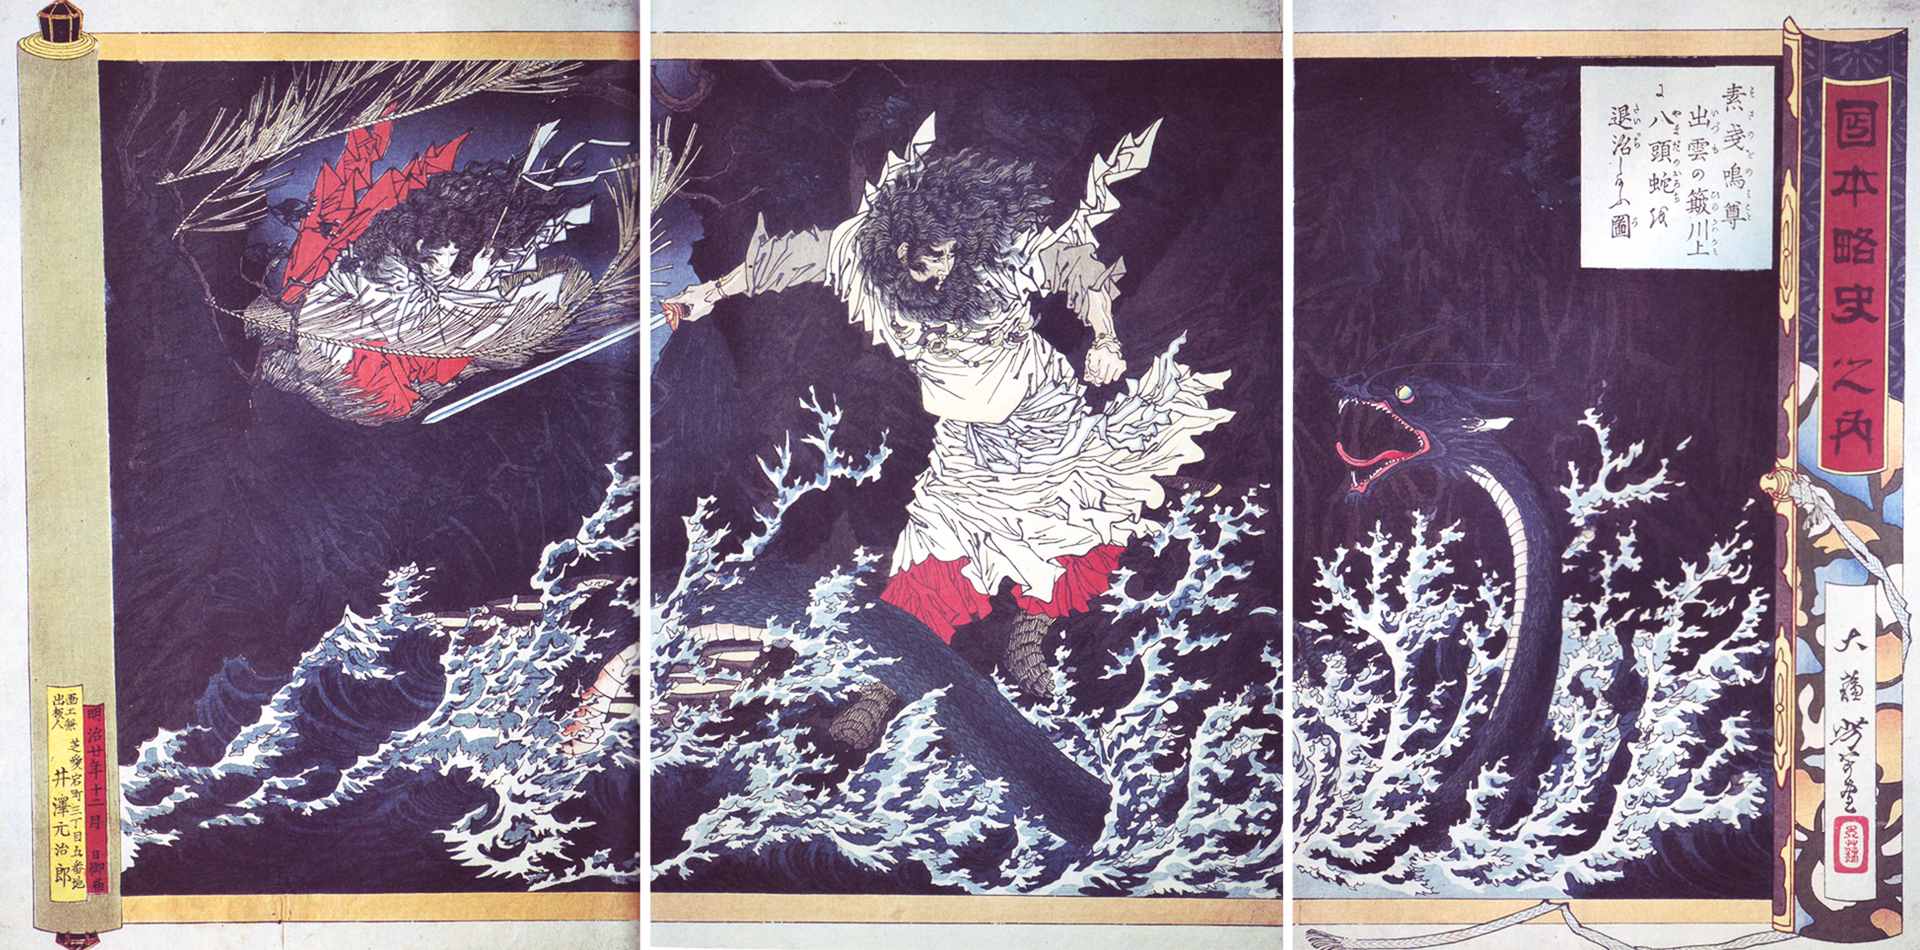 『日本略史 素戔嗚尊』に描かれたヤマタノオロチ、月岡芳年